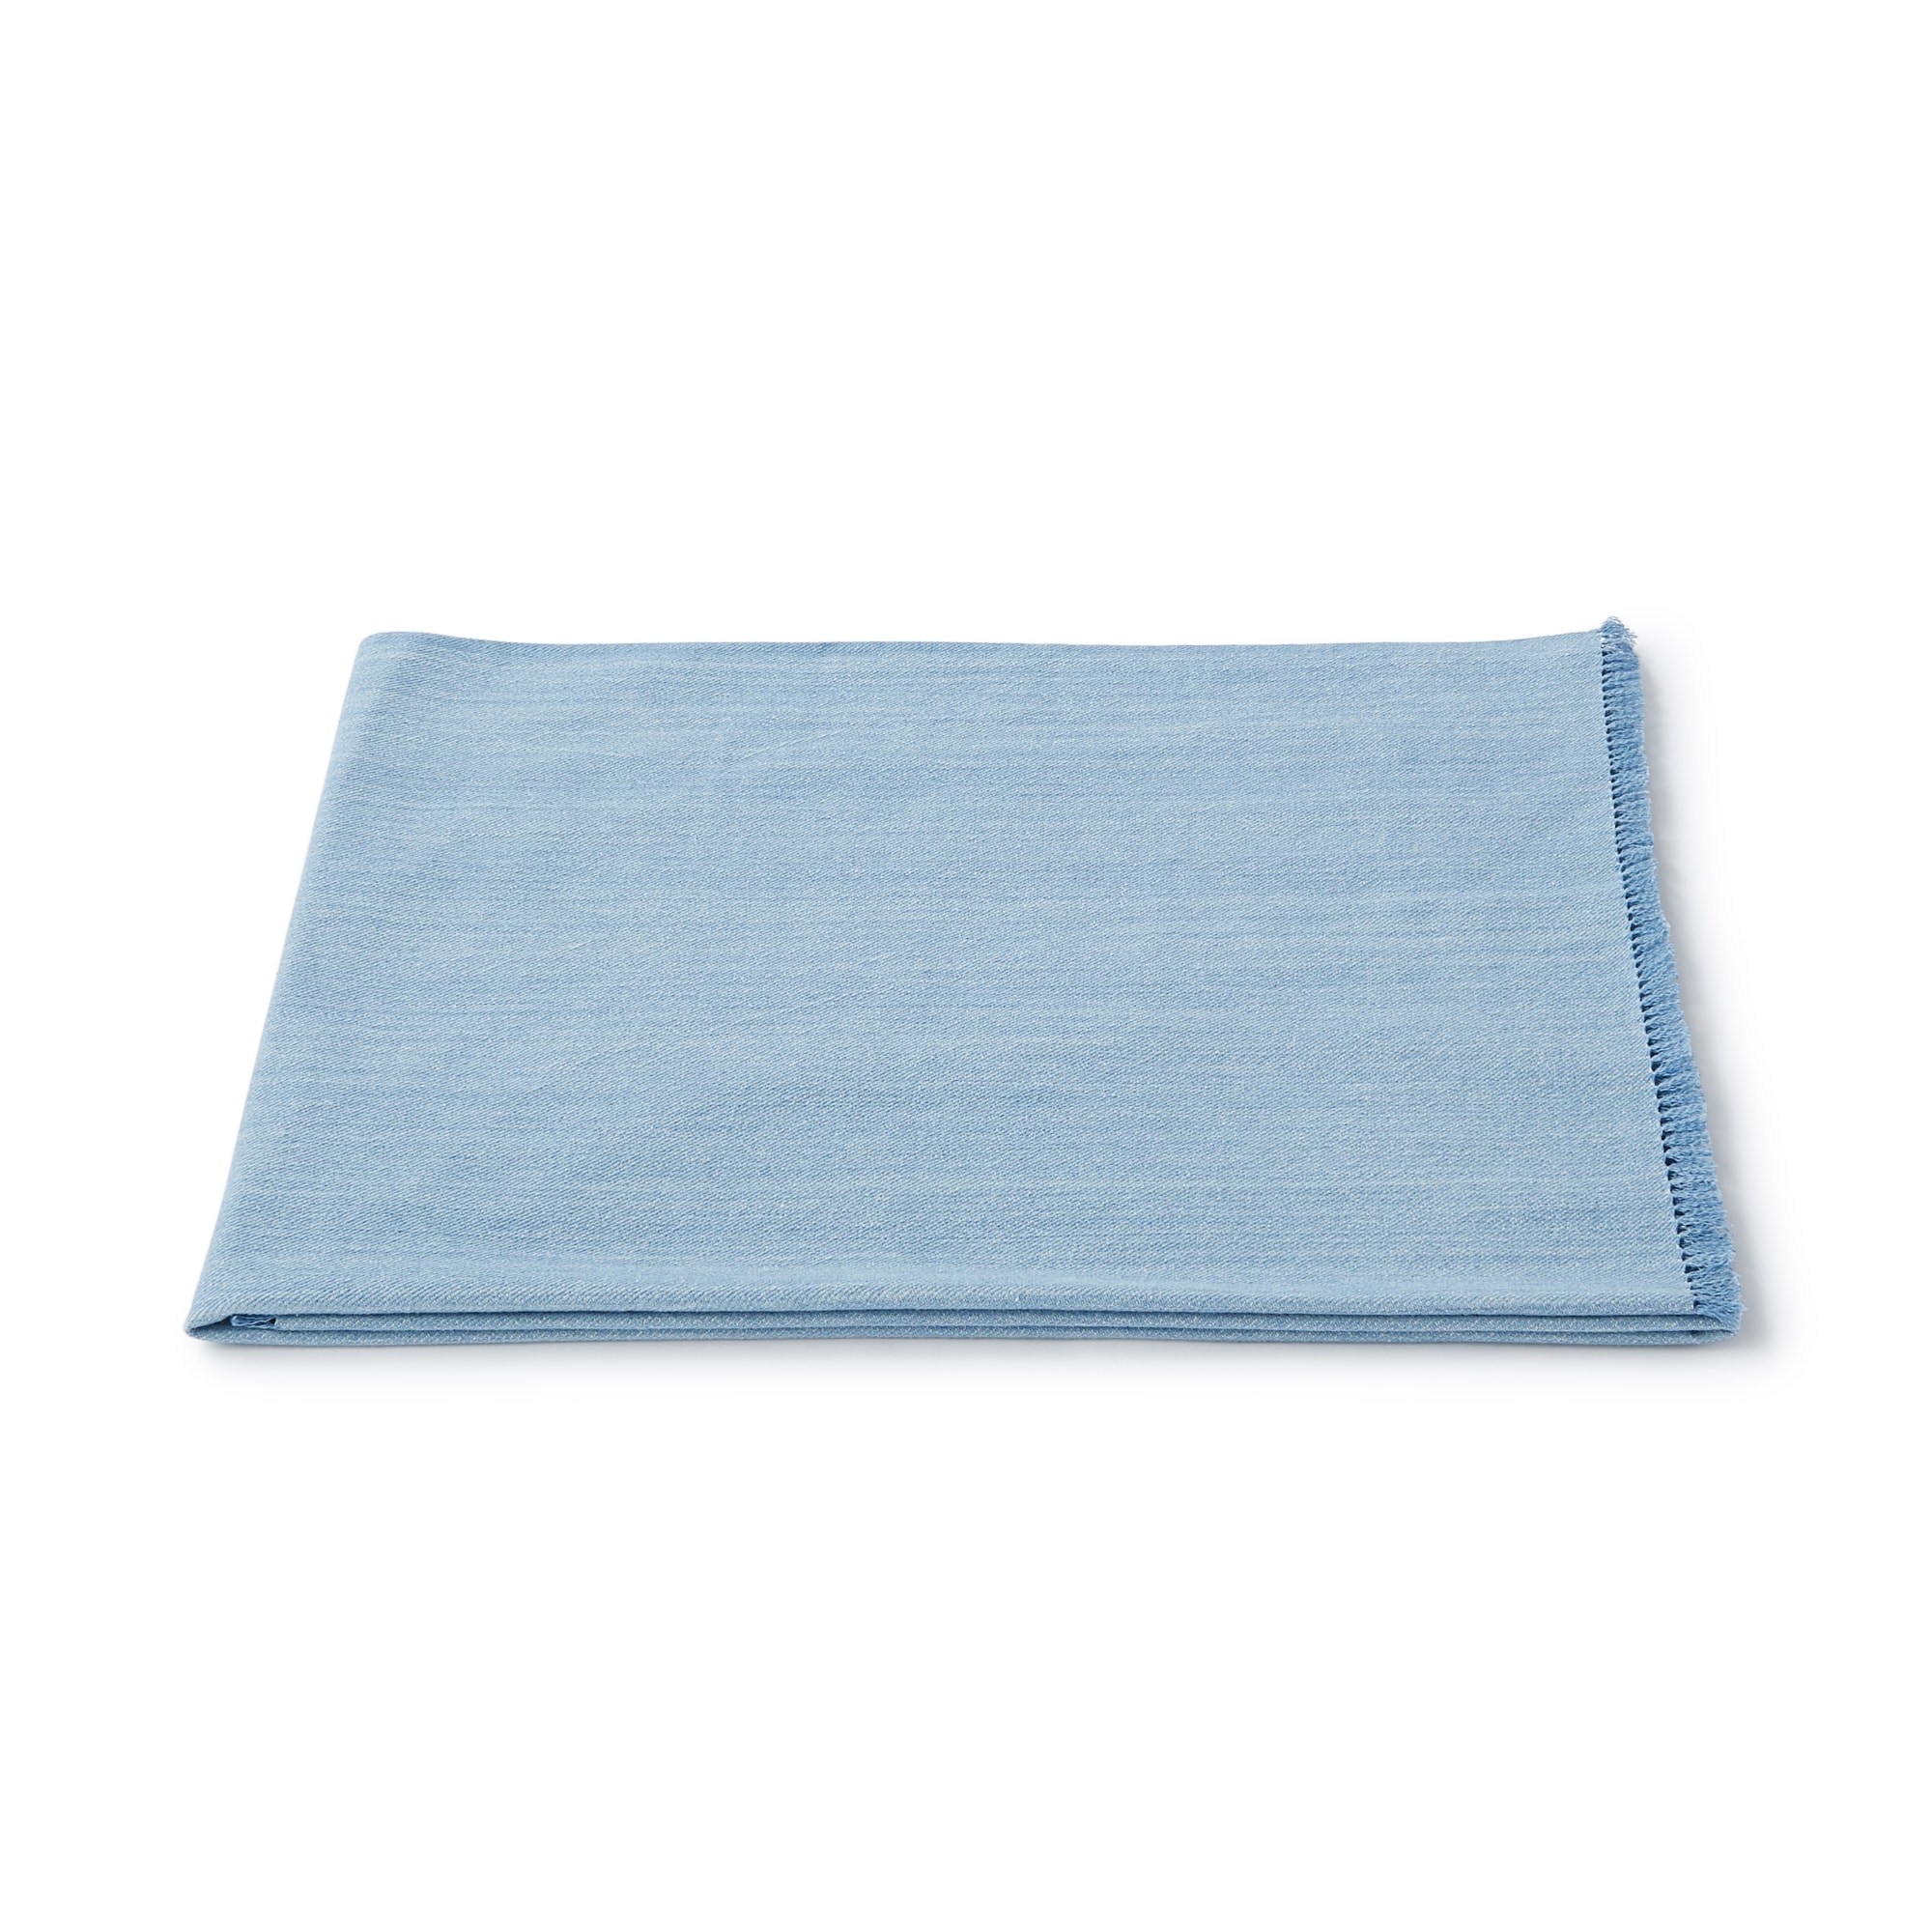 무인양품 일본 거실 담요 블랭킷 숄 80x100 블루 프린지